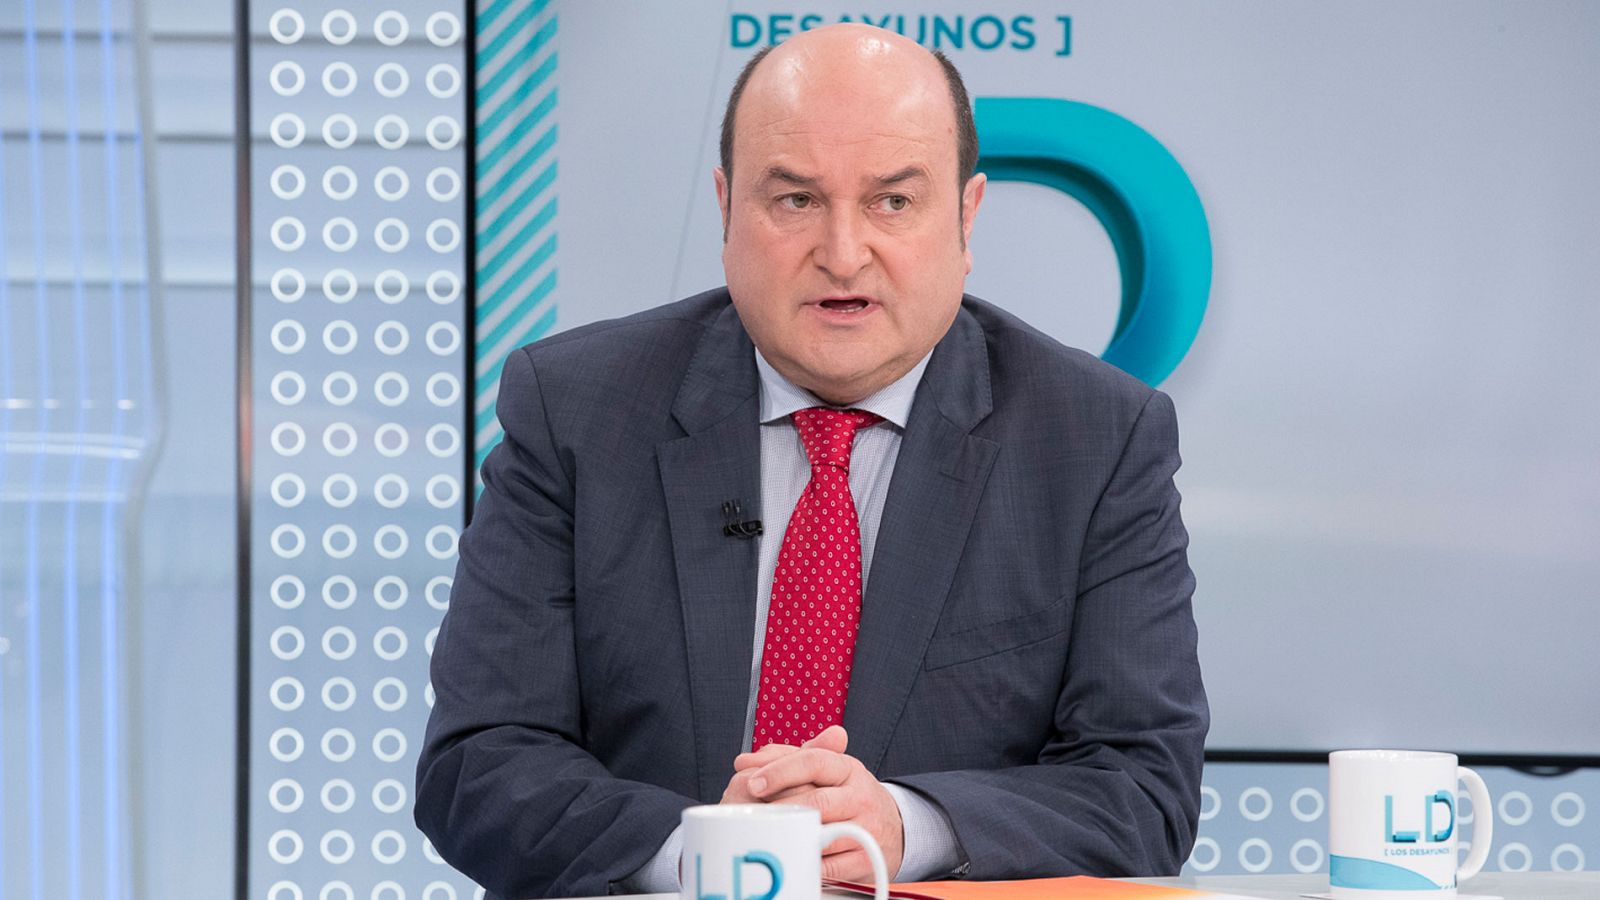 El PNV dice a Sánchez que habrá que hablar del modelo de Estado para dar su apoyo tras las elecciones generales - RTVE.es